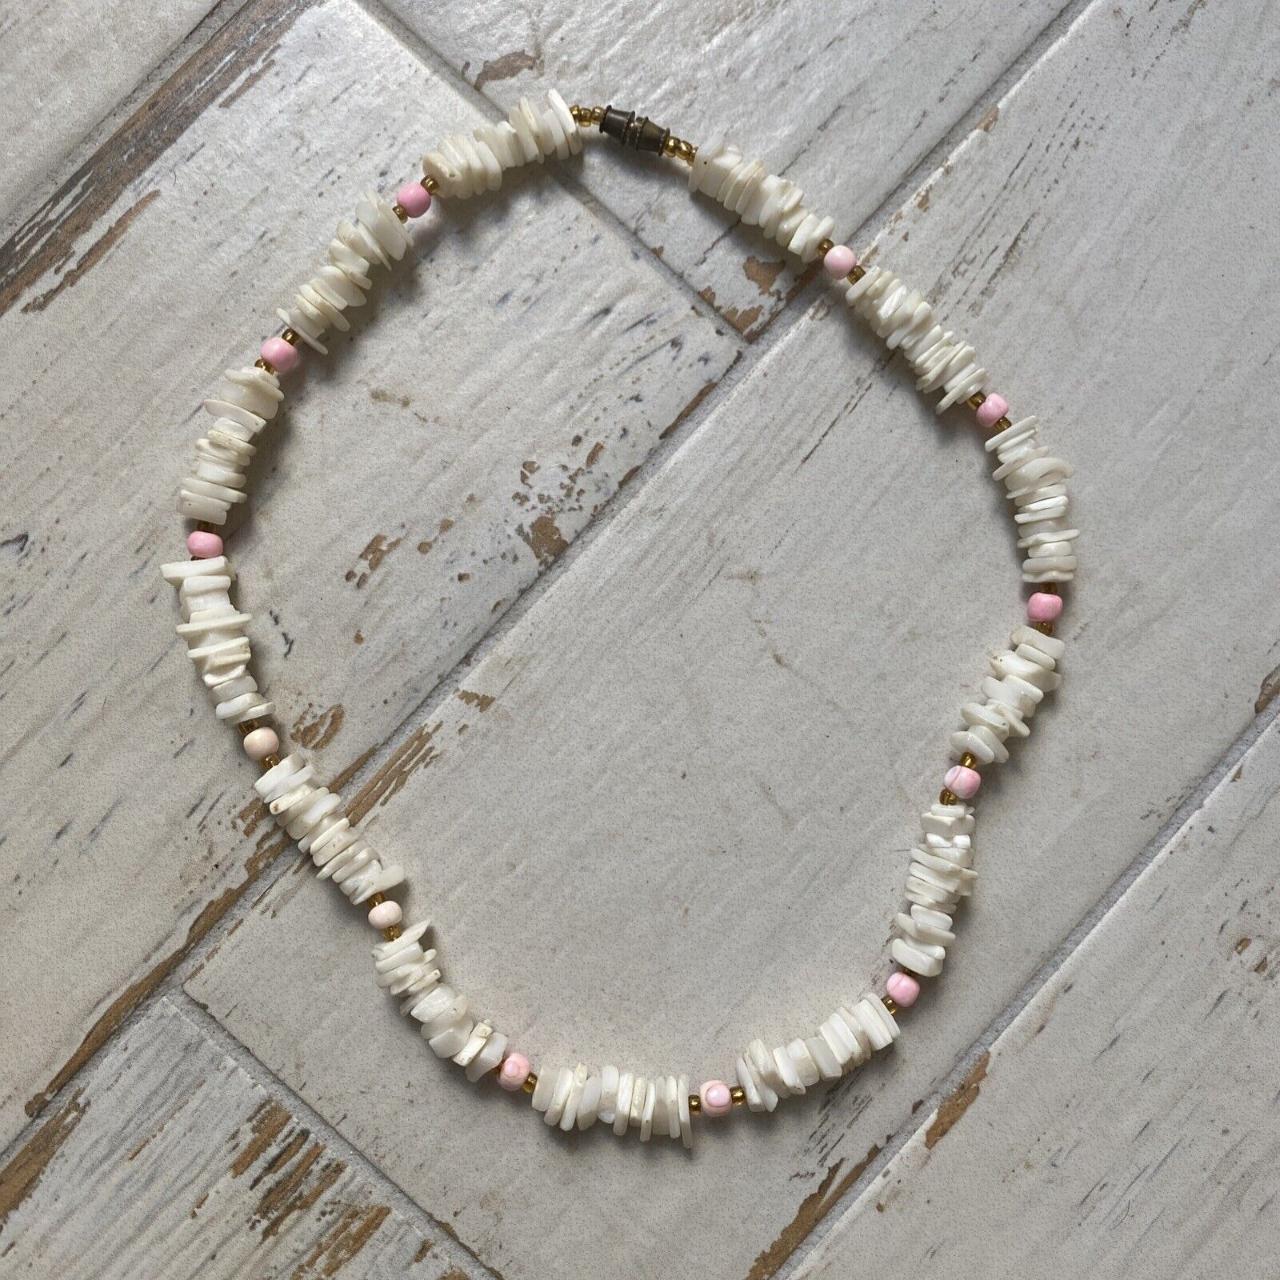 Hawaiian Authentic Puka Shell necklace | eBay